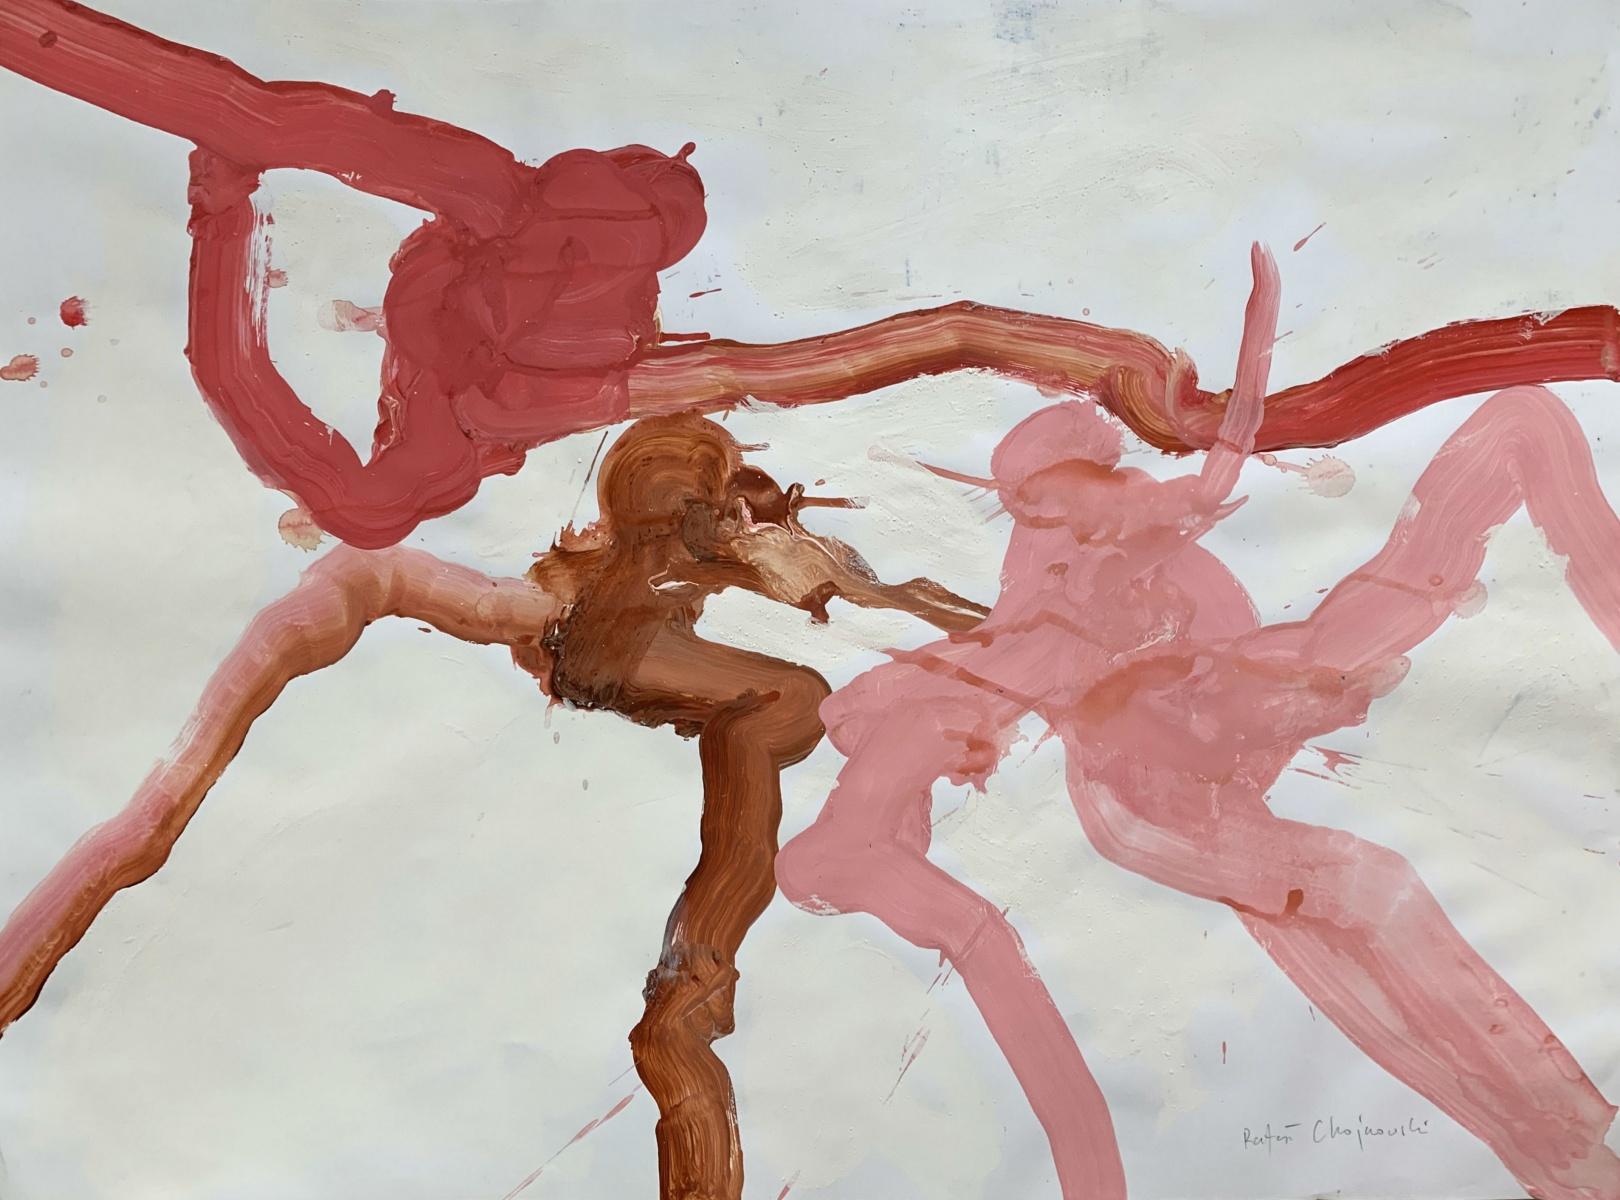 Rafal Chojnowski Abstract Painting – Tintenstift - Zeitgenössische Abstraktion, lebhafte Farben, Acryl auf Papier